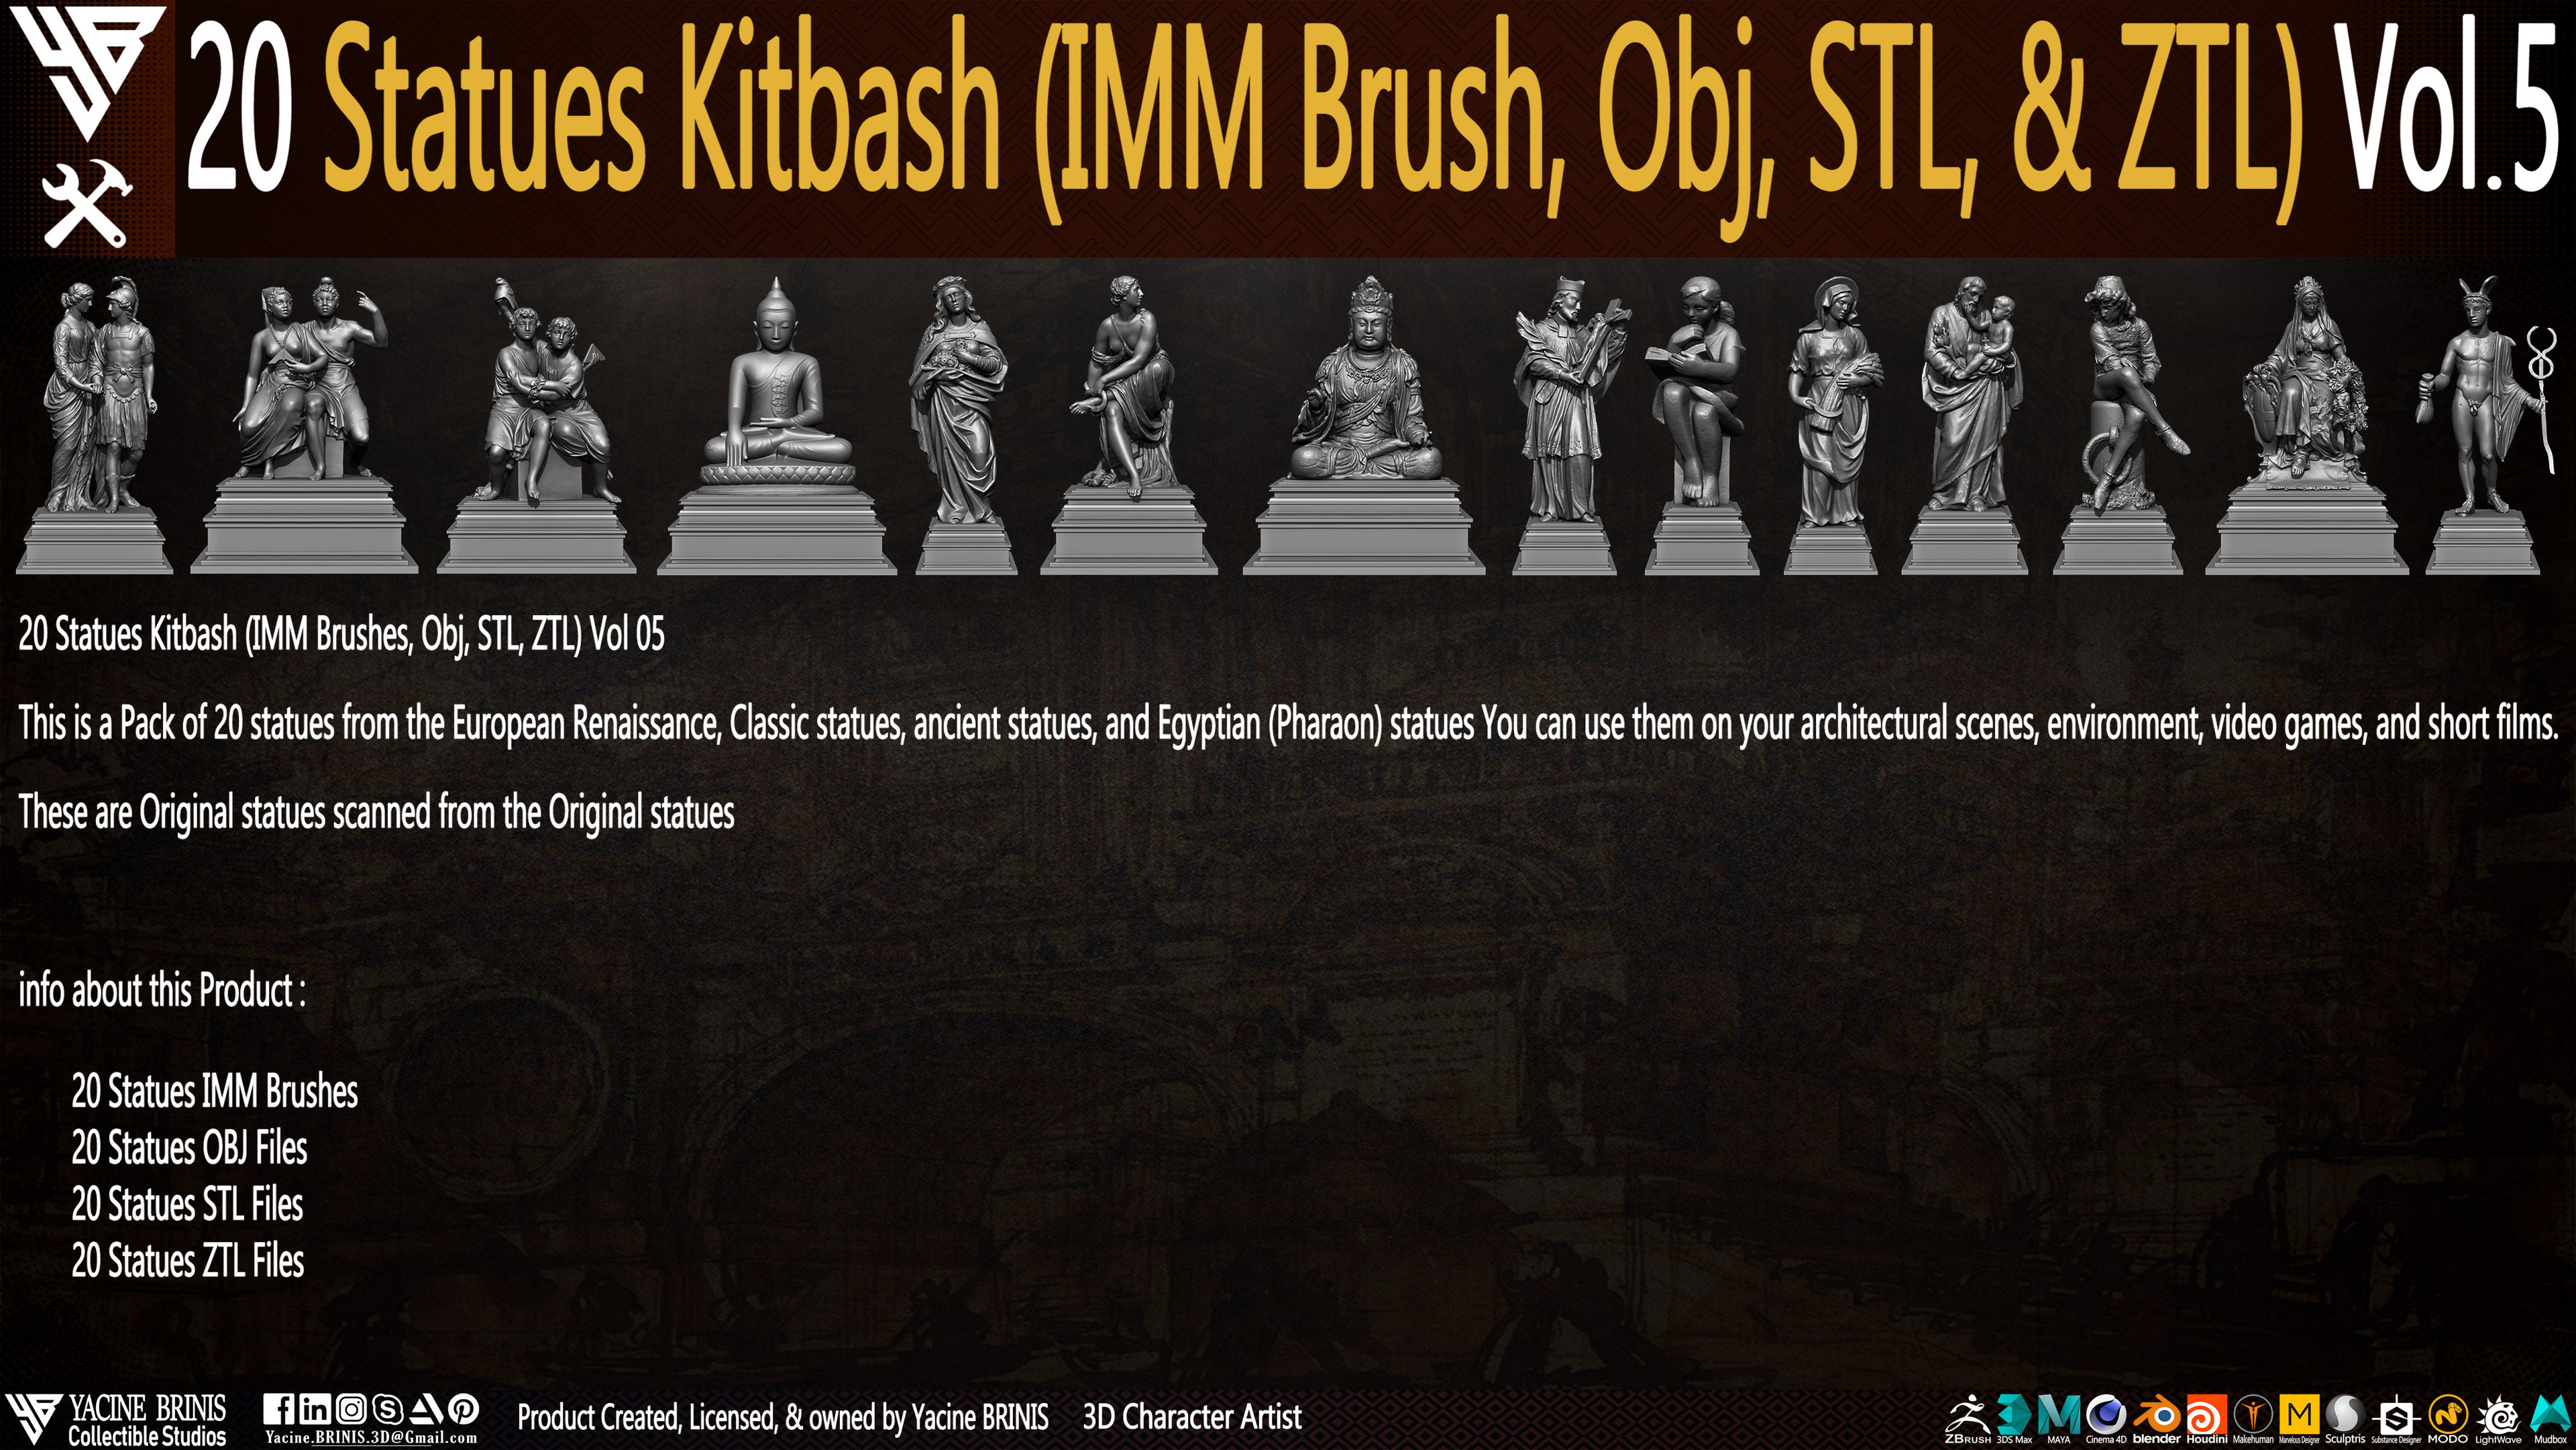 Statues Kitbash by yacine brinis Set 33